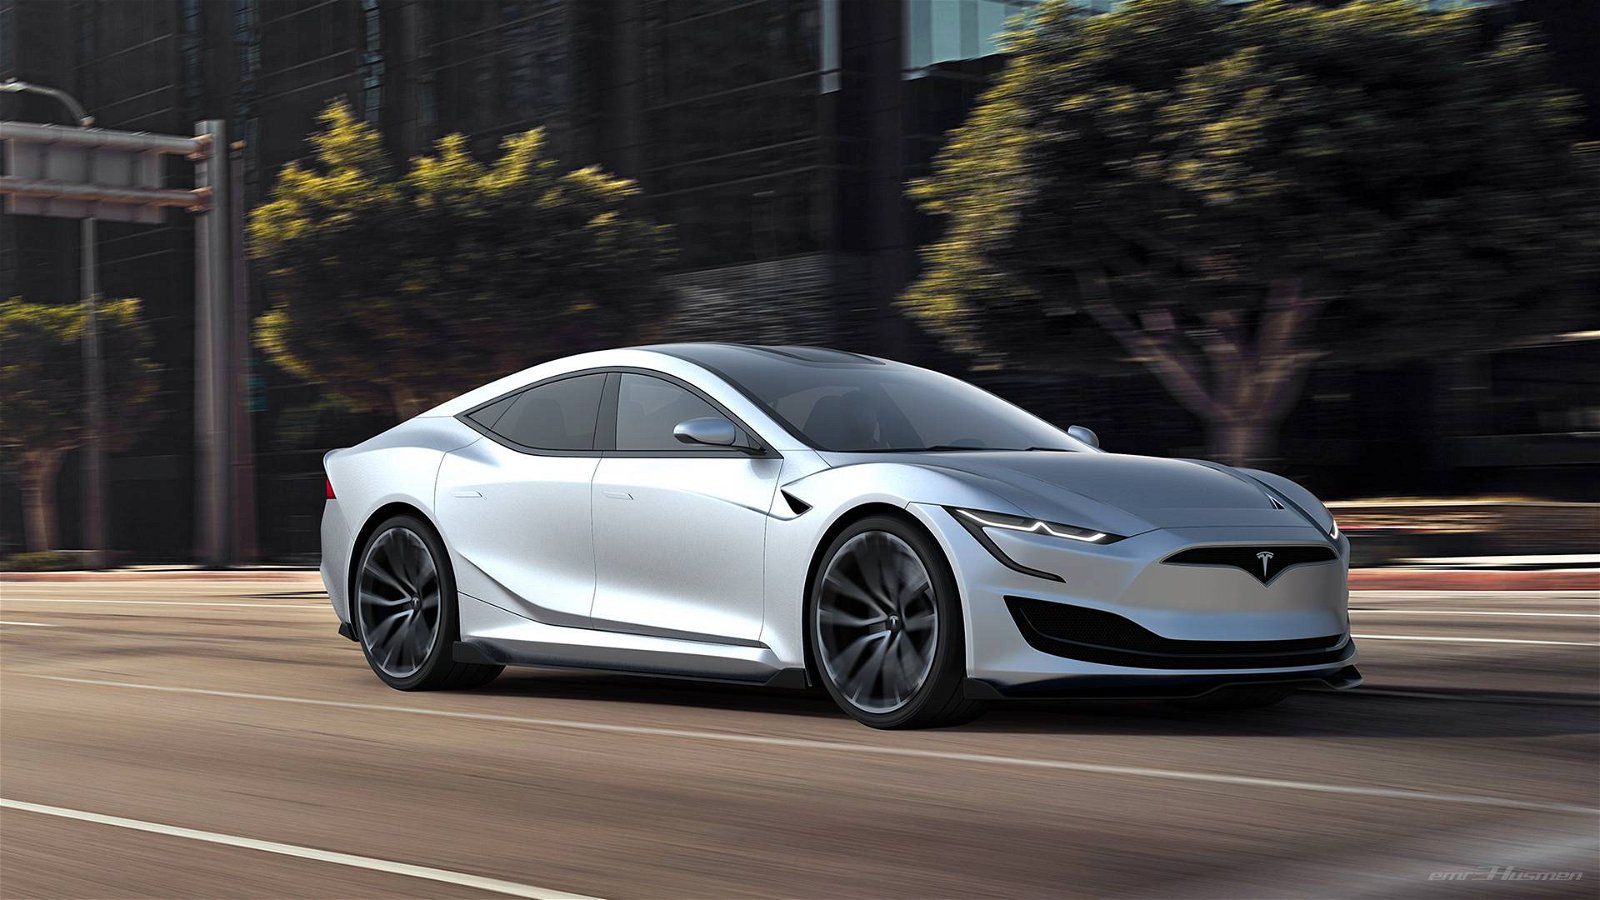 Next-generation-Tesla-Model-S-by-Emre-Husmen-12